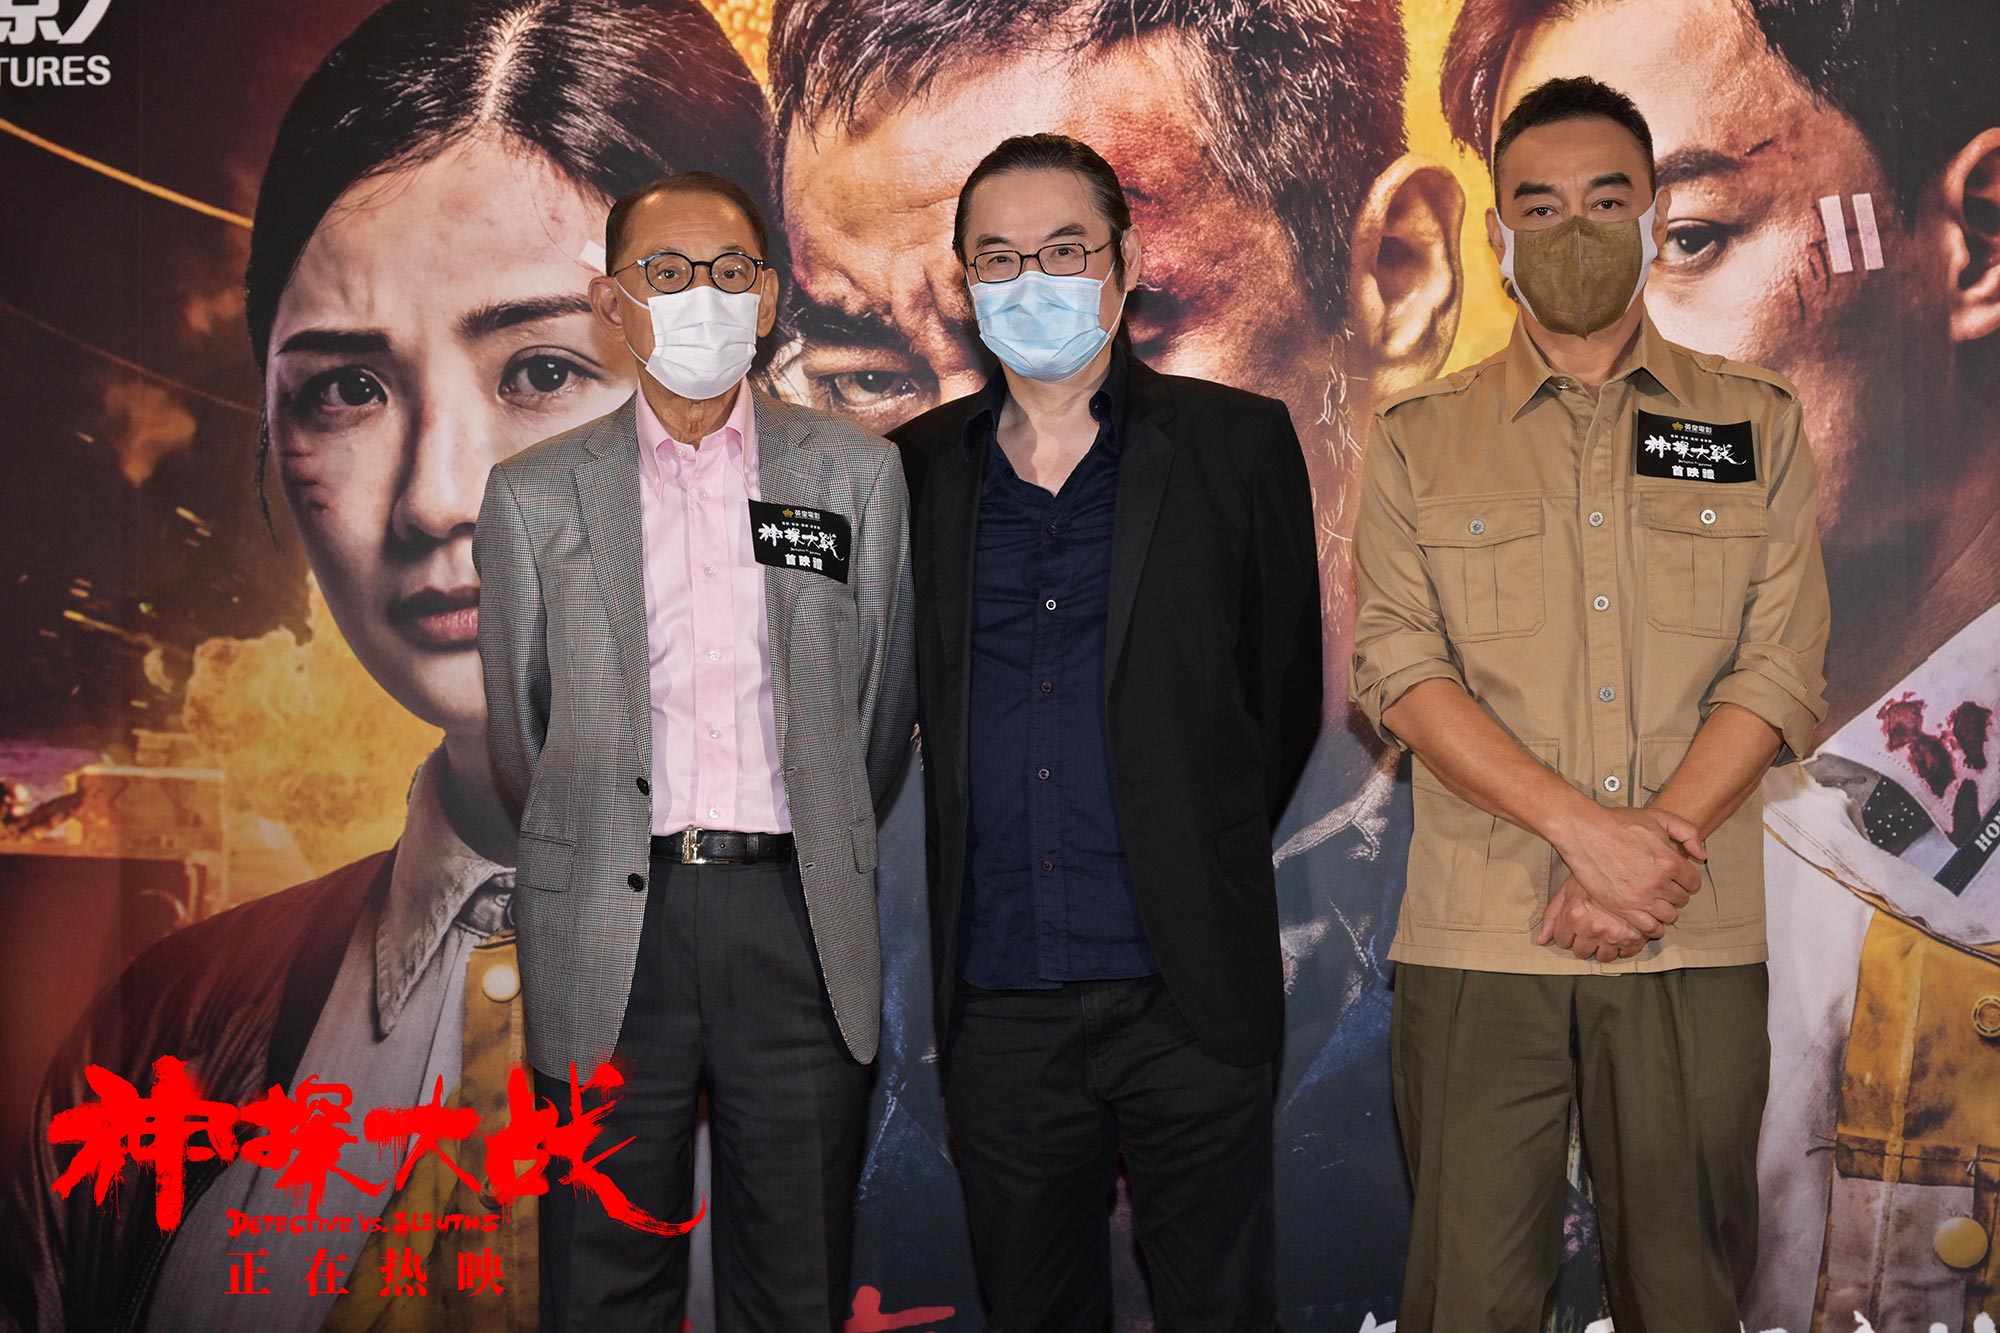 《神探大战》香港首映礼众星助阵 “神探回归”片段令网友大呼“内卷”